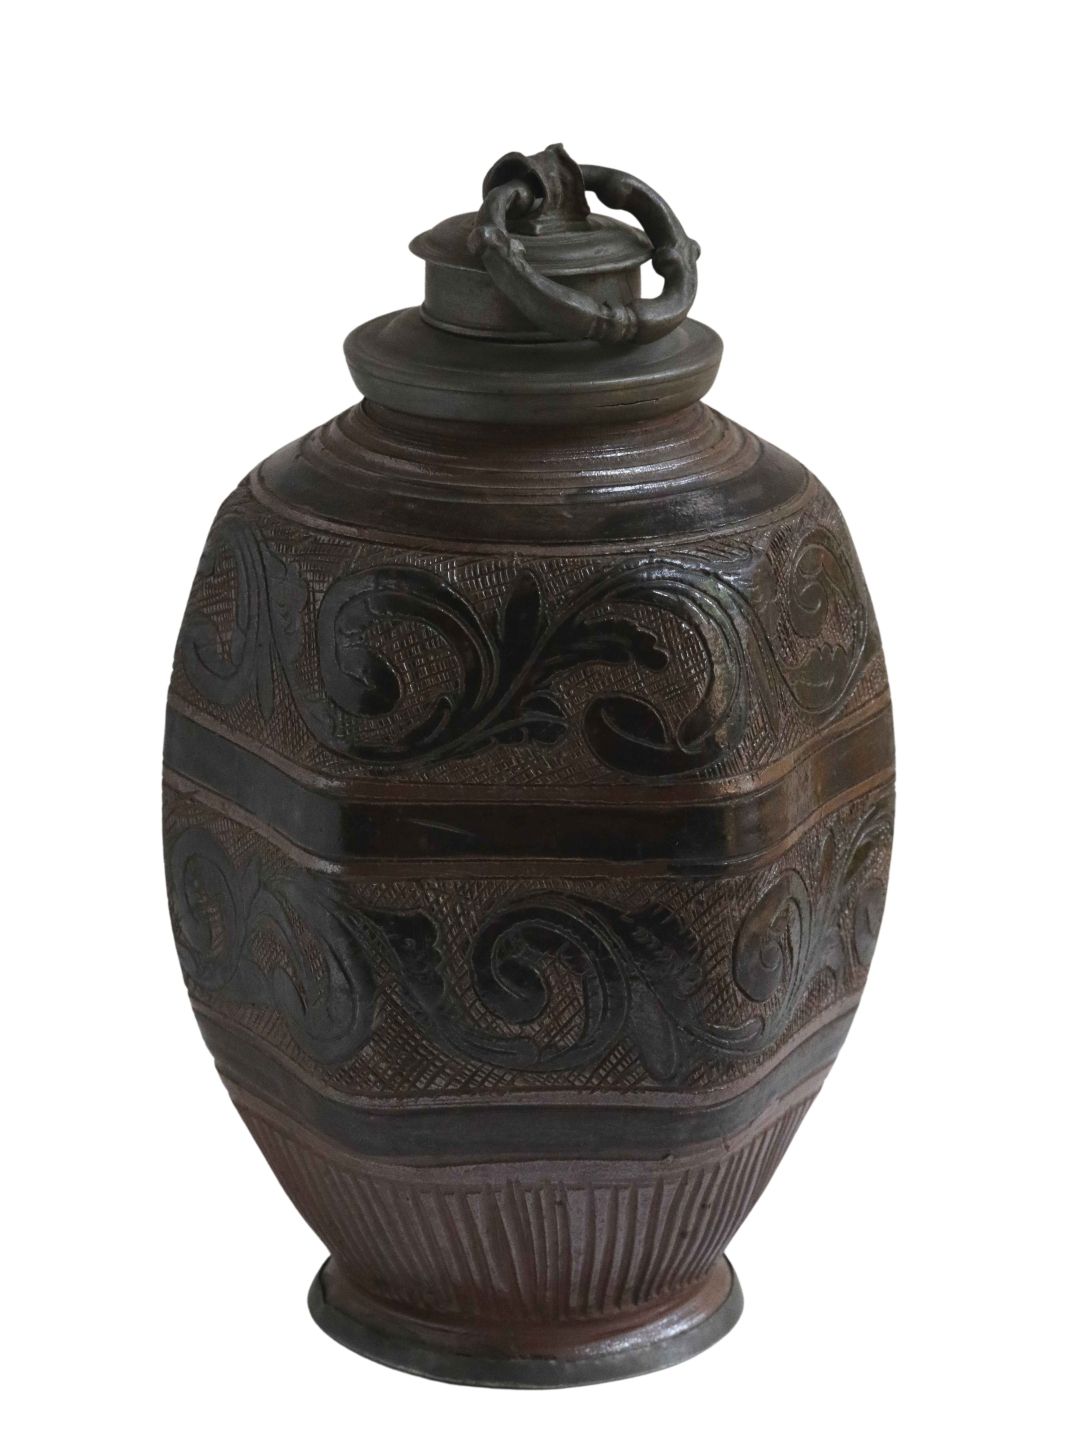 muskau-steinzeug-flasche-1700-blumen-ritzdekor